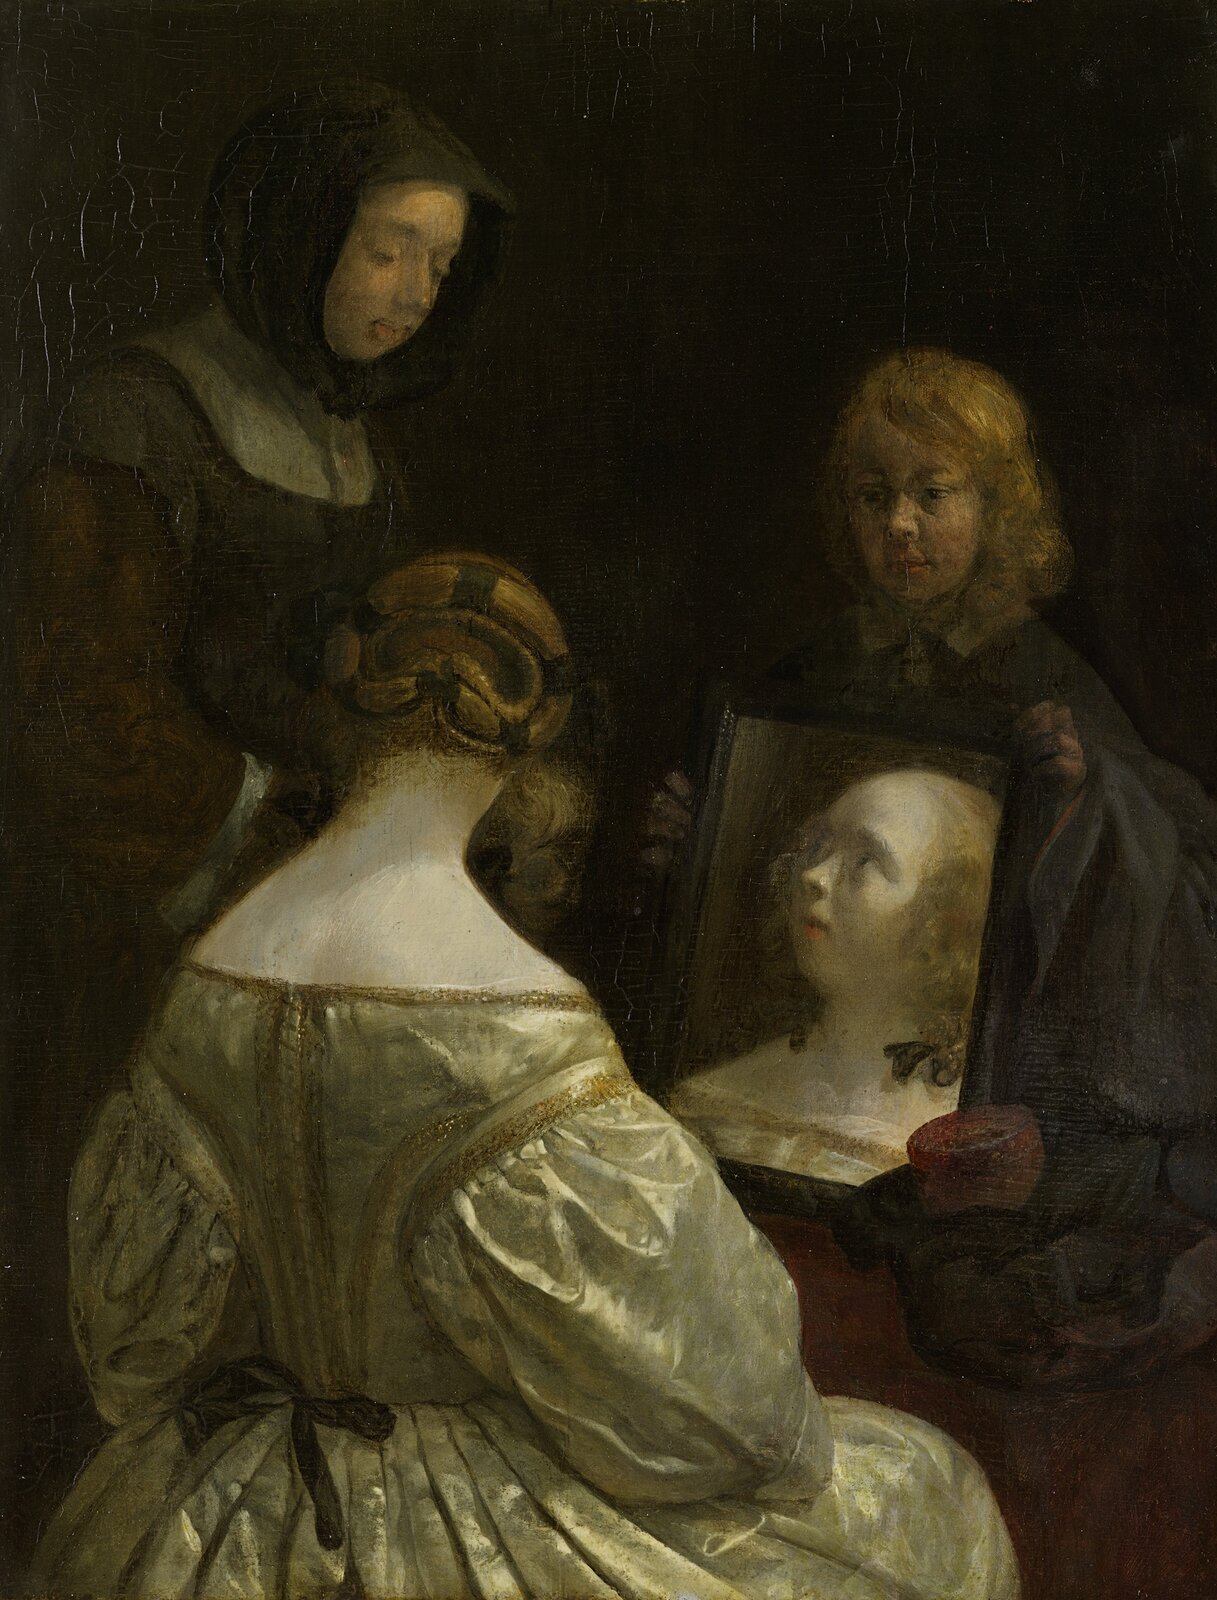 Ilustracja o kształcie pionowego prostokąta  przedstawia obraz Gerarda ter Borcha „Kobieta przed lustrem”. Ukazuje  trzy  kobiety. Jedna kobieta na kolanach trzyma lustro, w którym odbija się twarz siedzącej tyłem damy. Po lewej stronie stoi kobieta z nakrytą głową. Tło jest bardzo ciemne, pozbawione dekoracji. 